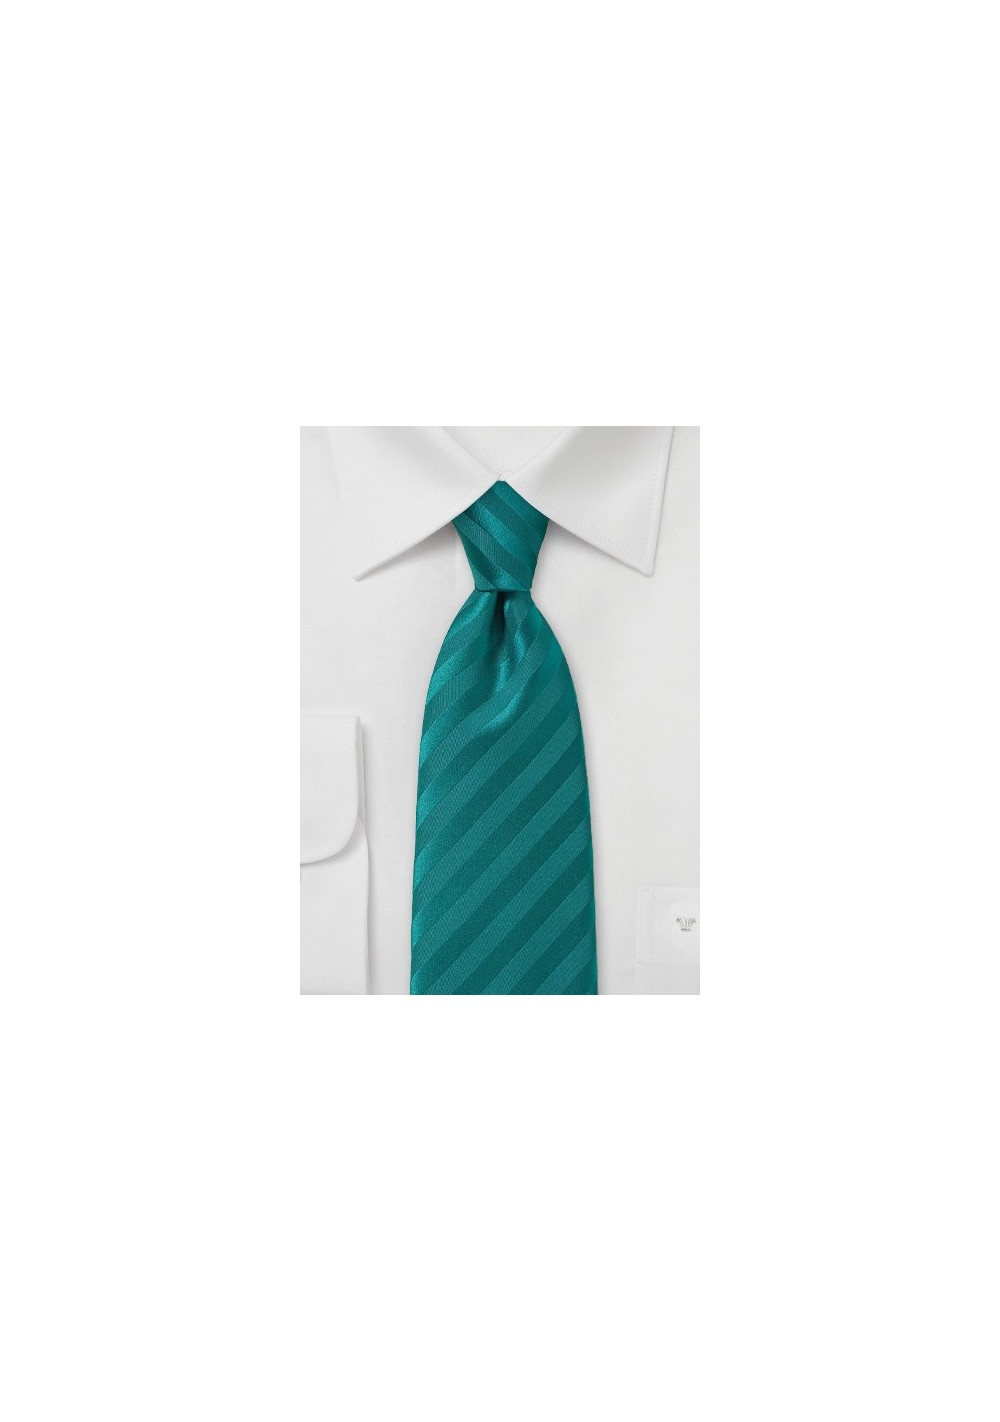 Teal Striped Men's Necktie